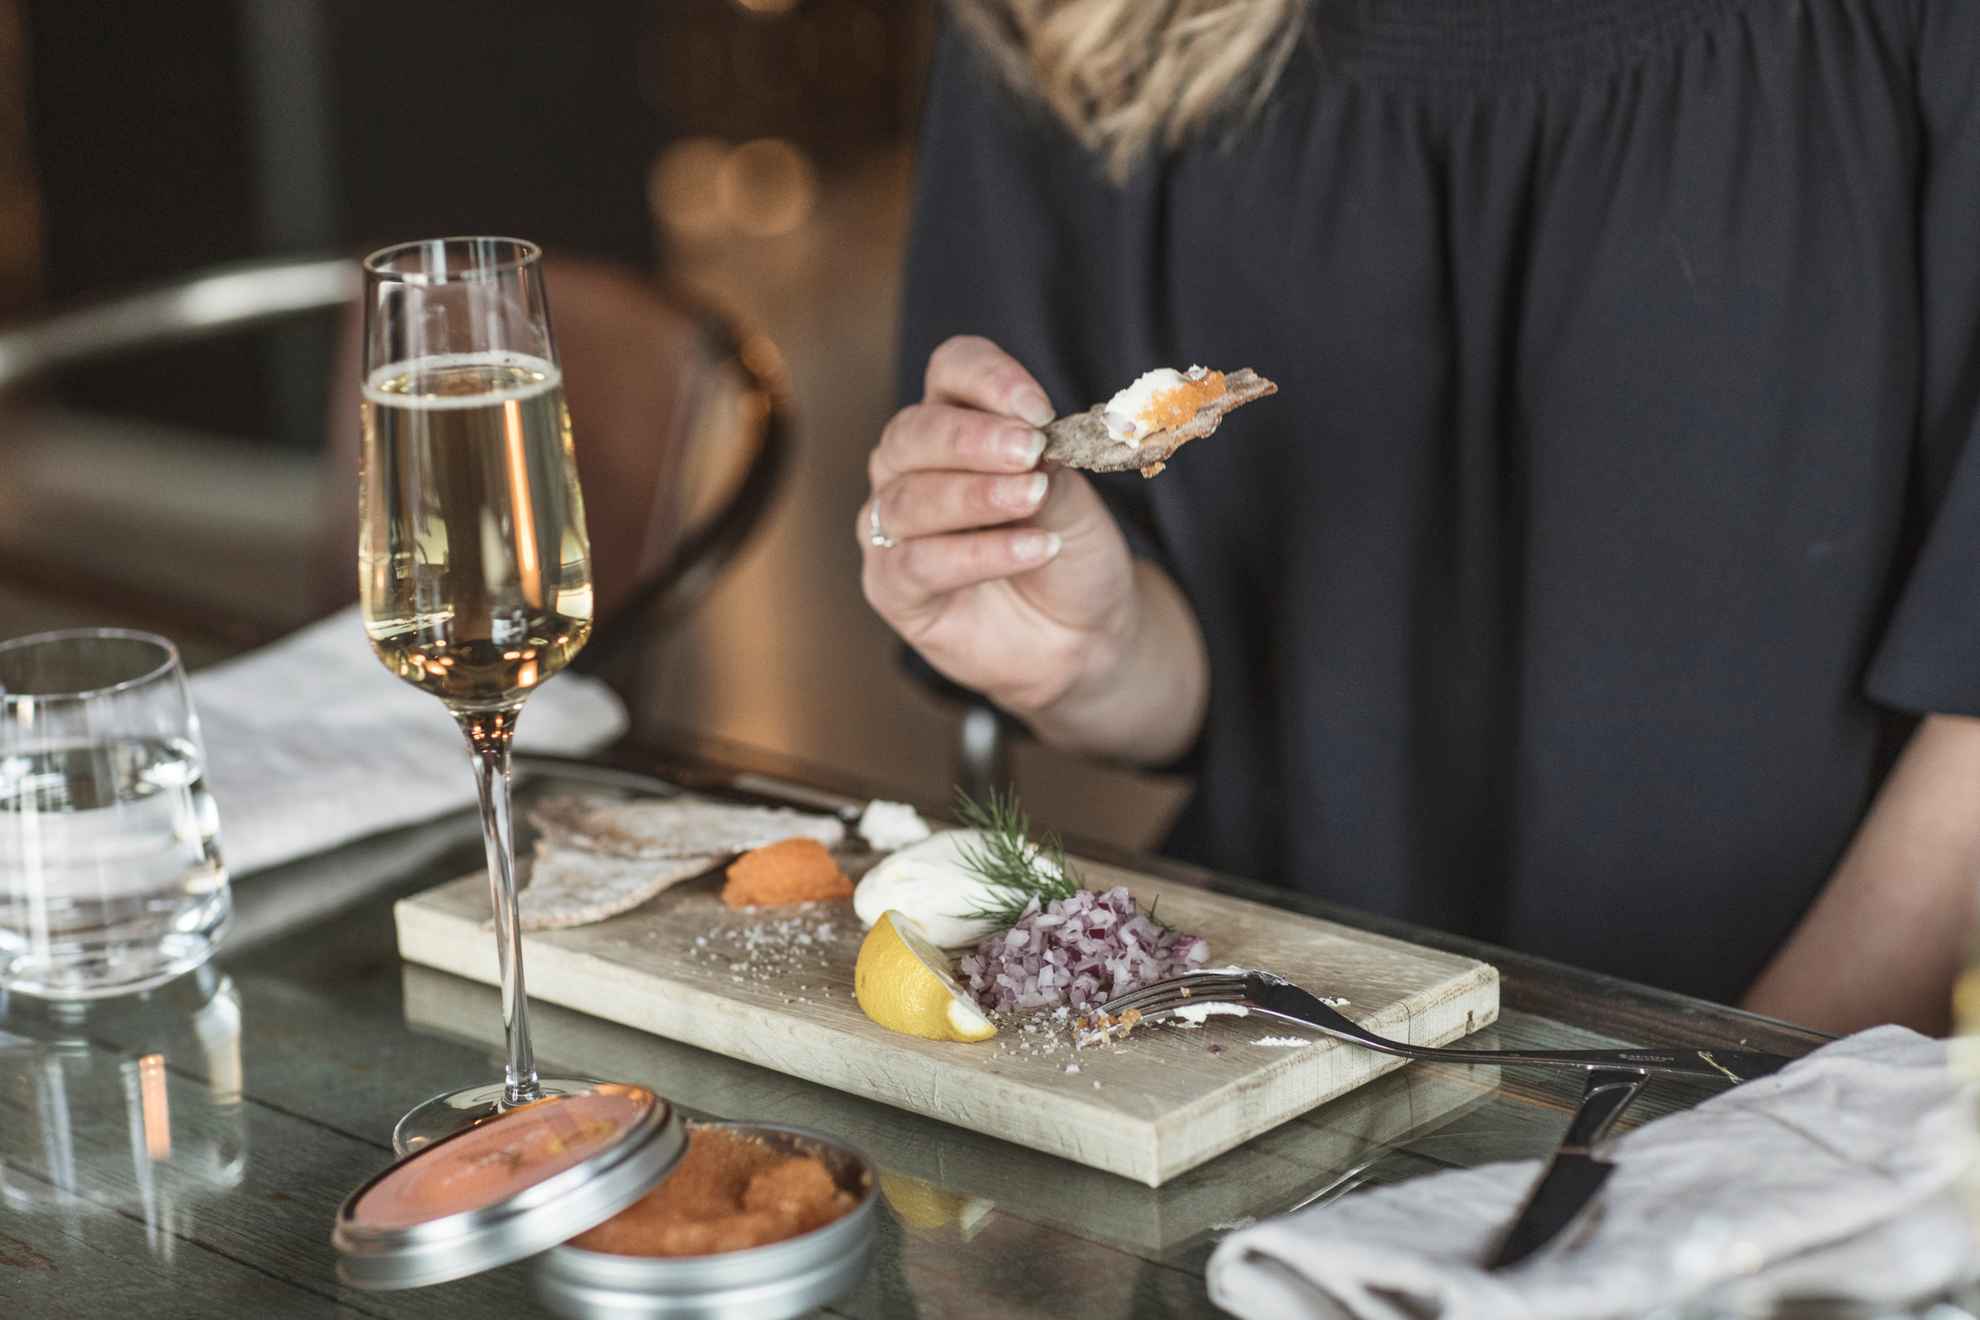 Gros plan sur une femme mangeant du caviar, de l'oignon rouge, de la crème, du citron et du pain croustillant sur un plateau en bois et buvant un verre de mousseux.